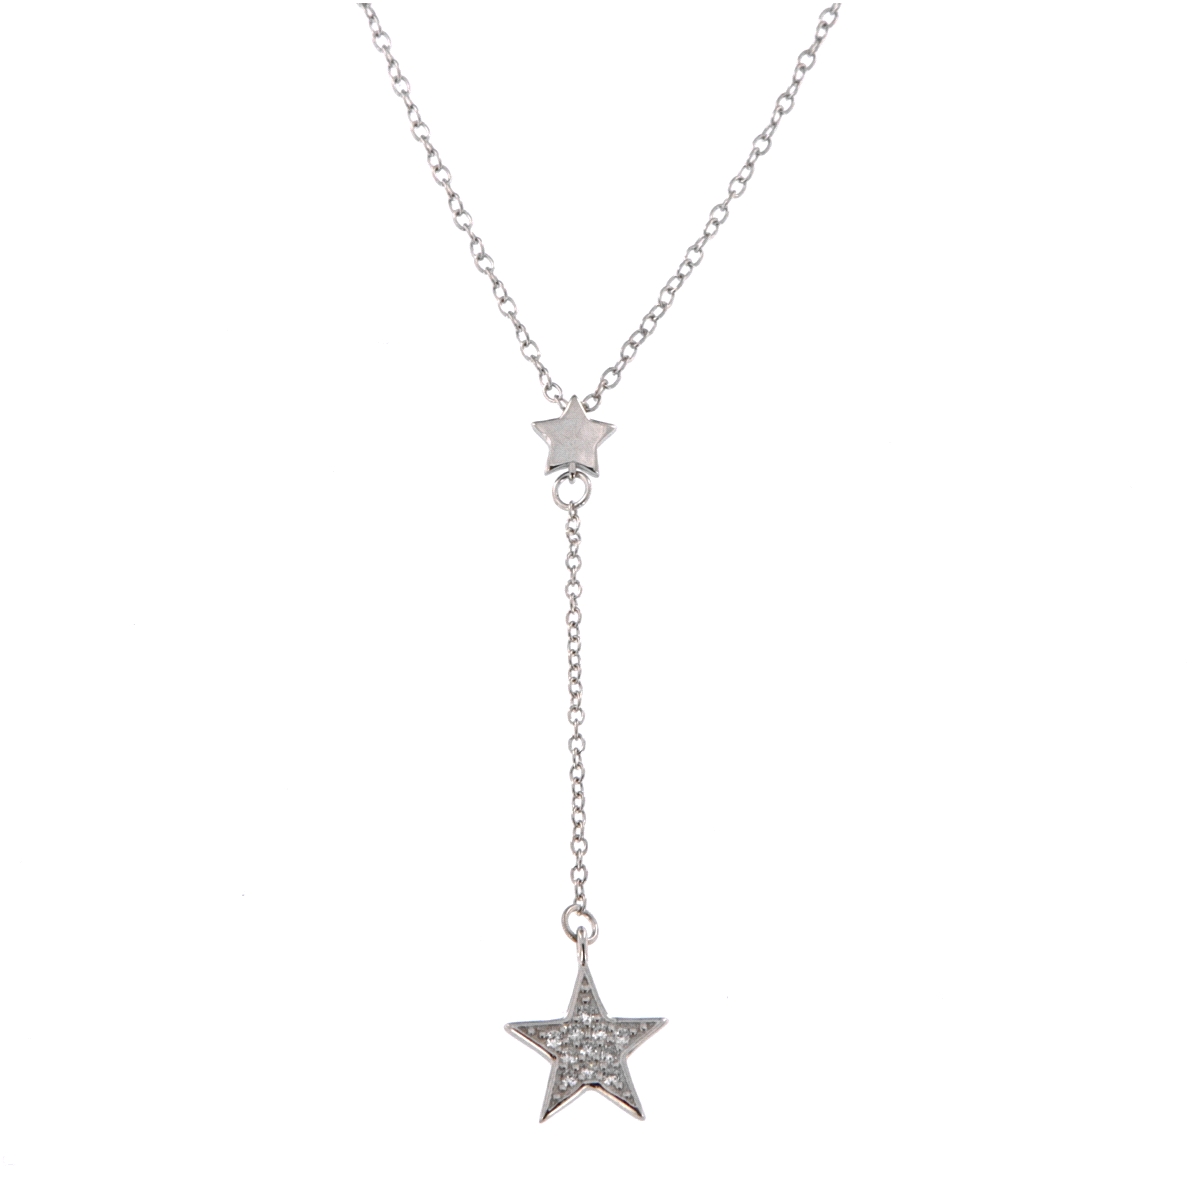 <p>Gargantilla alargada con caída acabada en una pequeña estrella decorada con circonitas blancas,en plata de primera ley.</p>
<